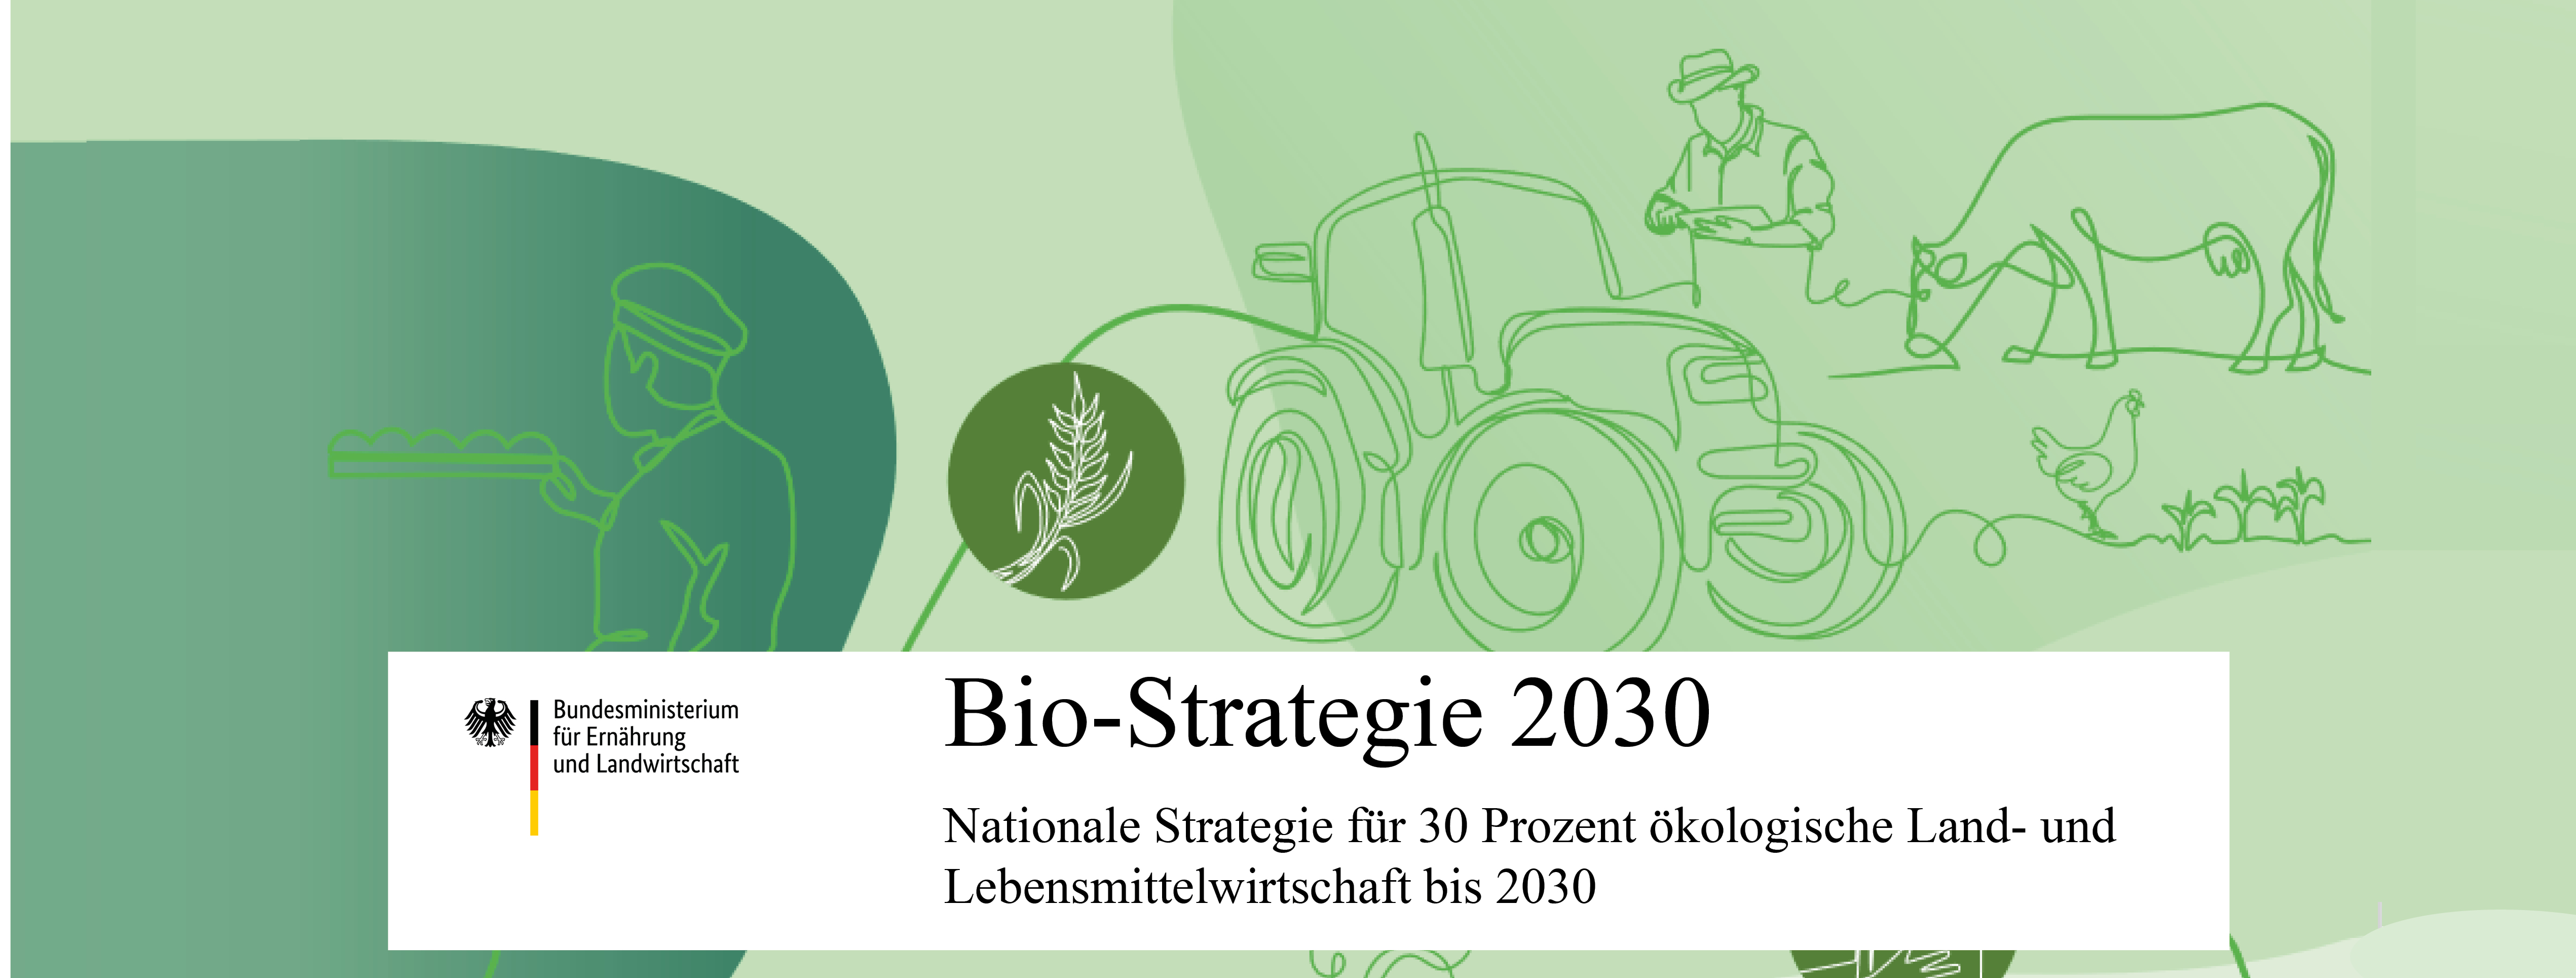 Symbolbild Bio-Strategie Deutschland 2030